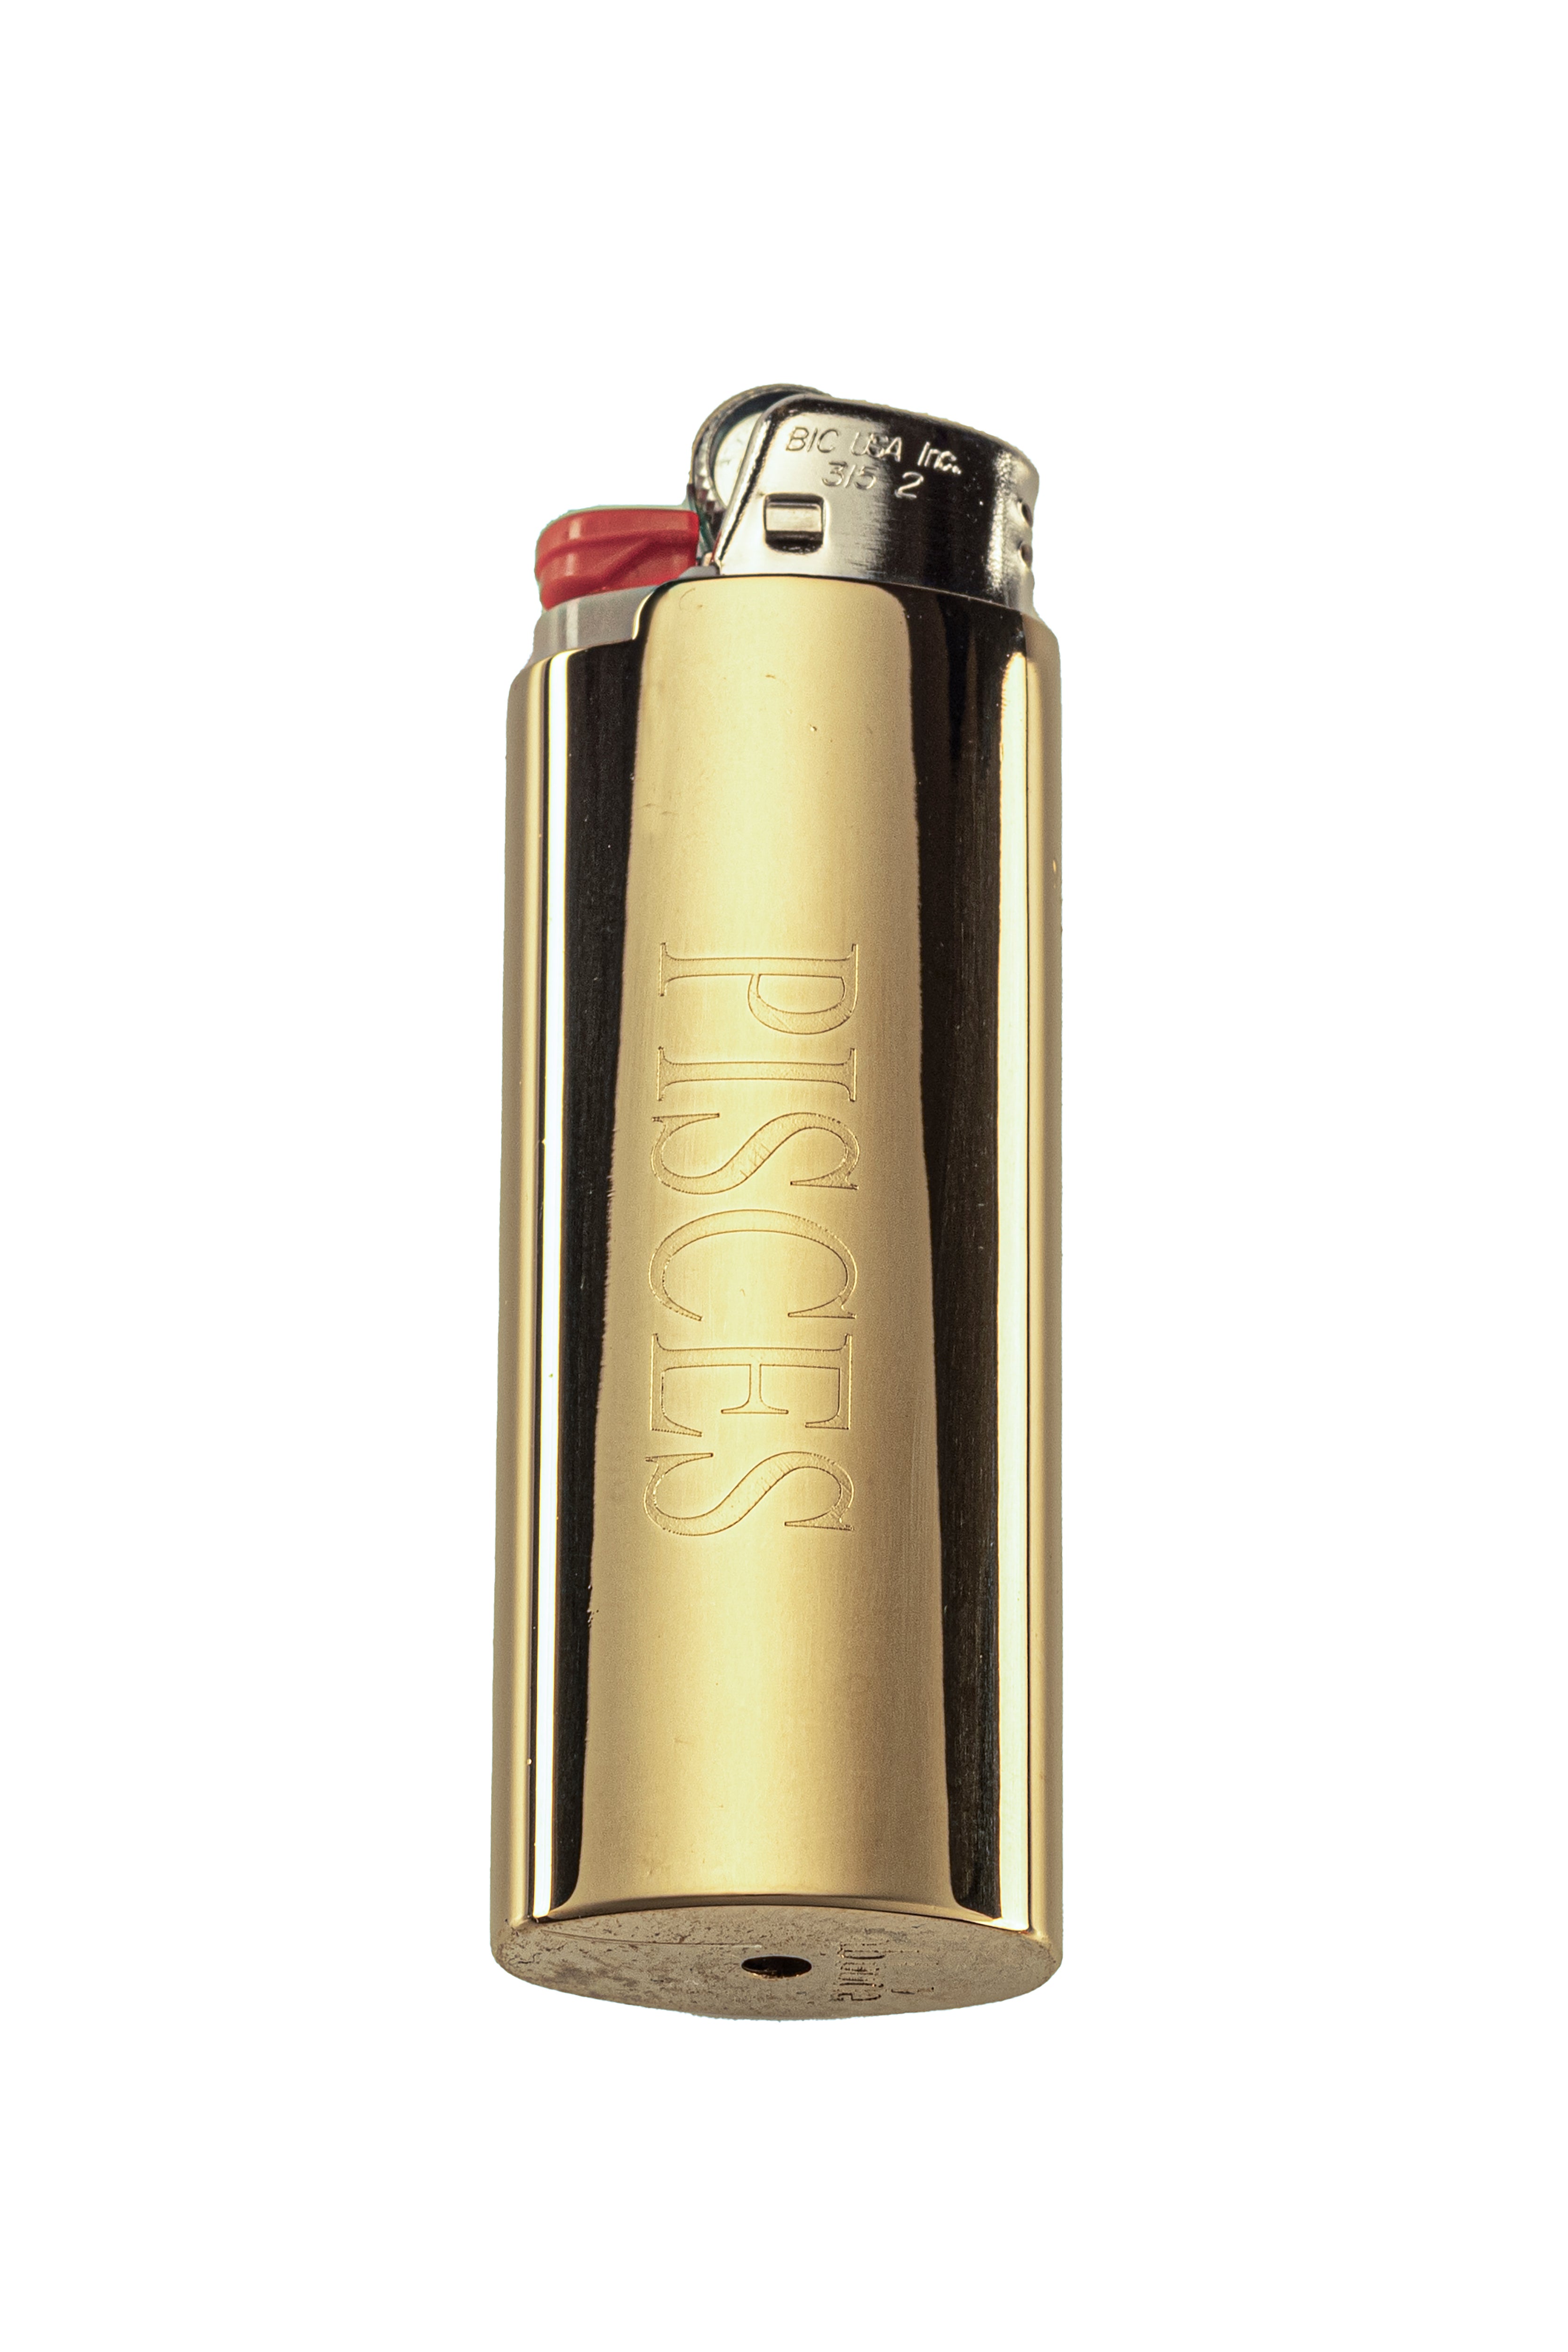 Zodiac Lighter Cases